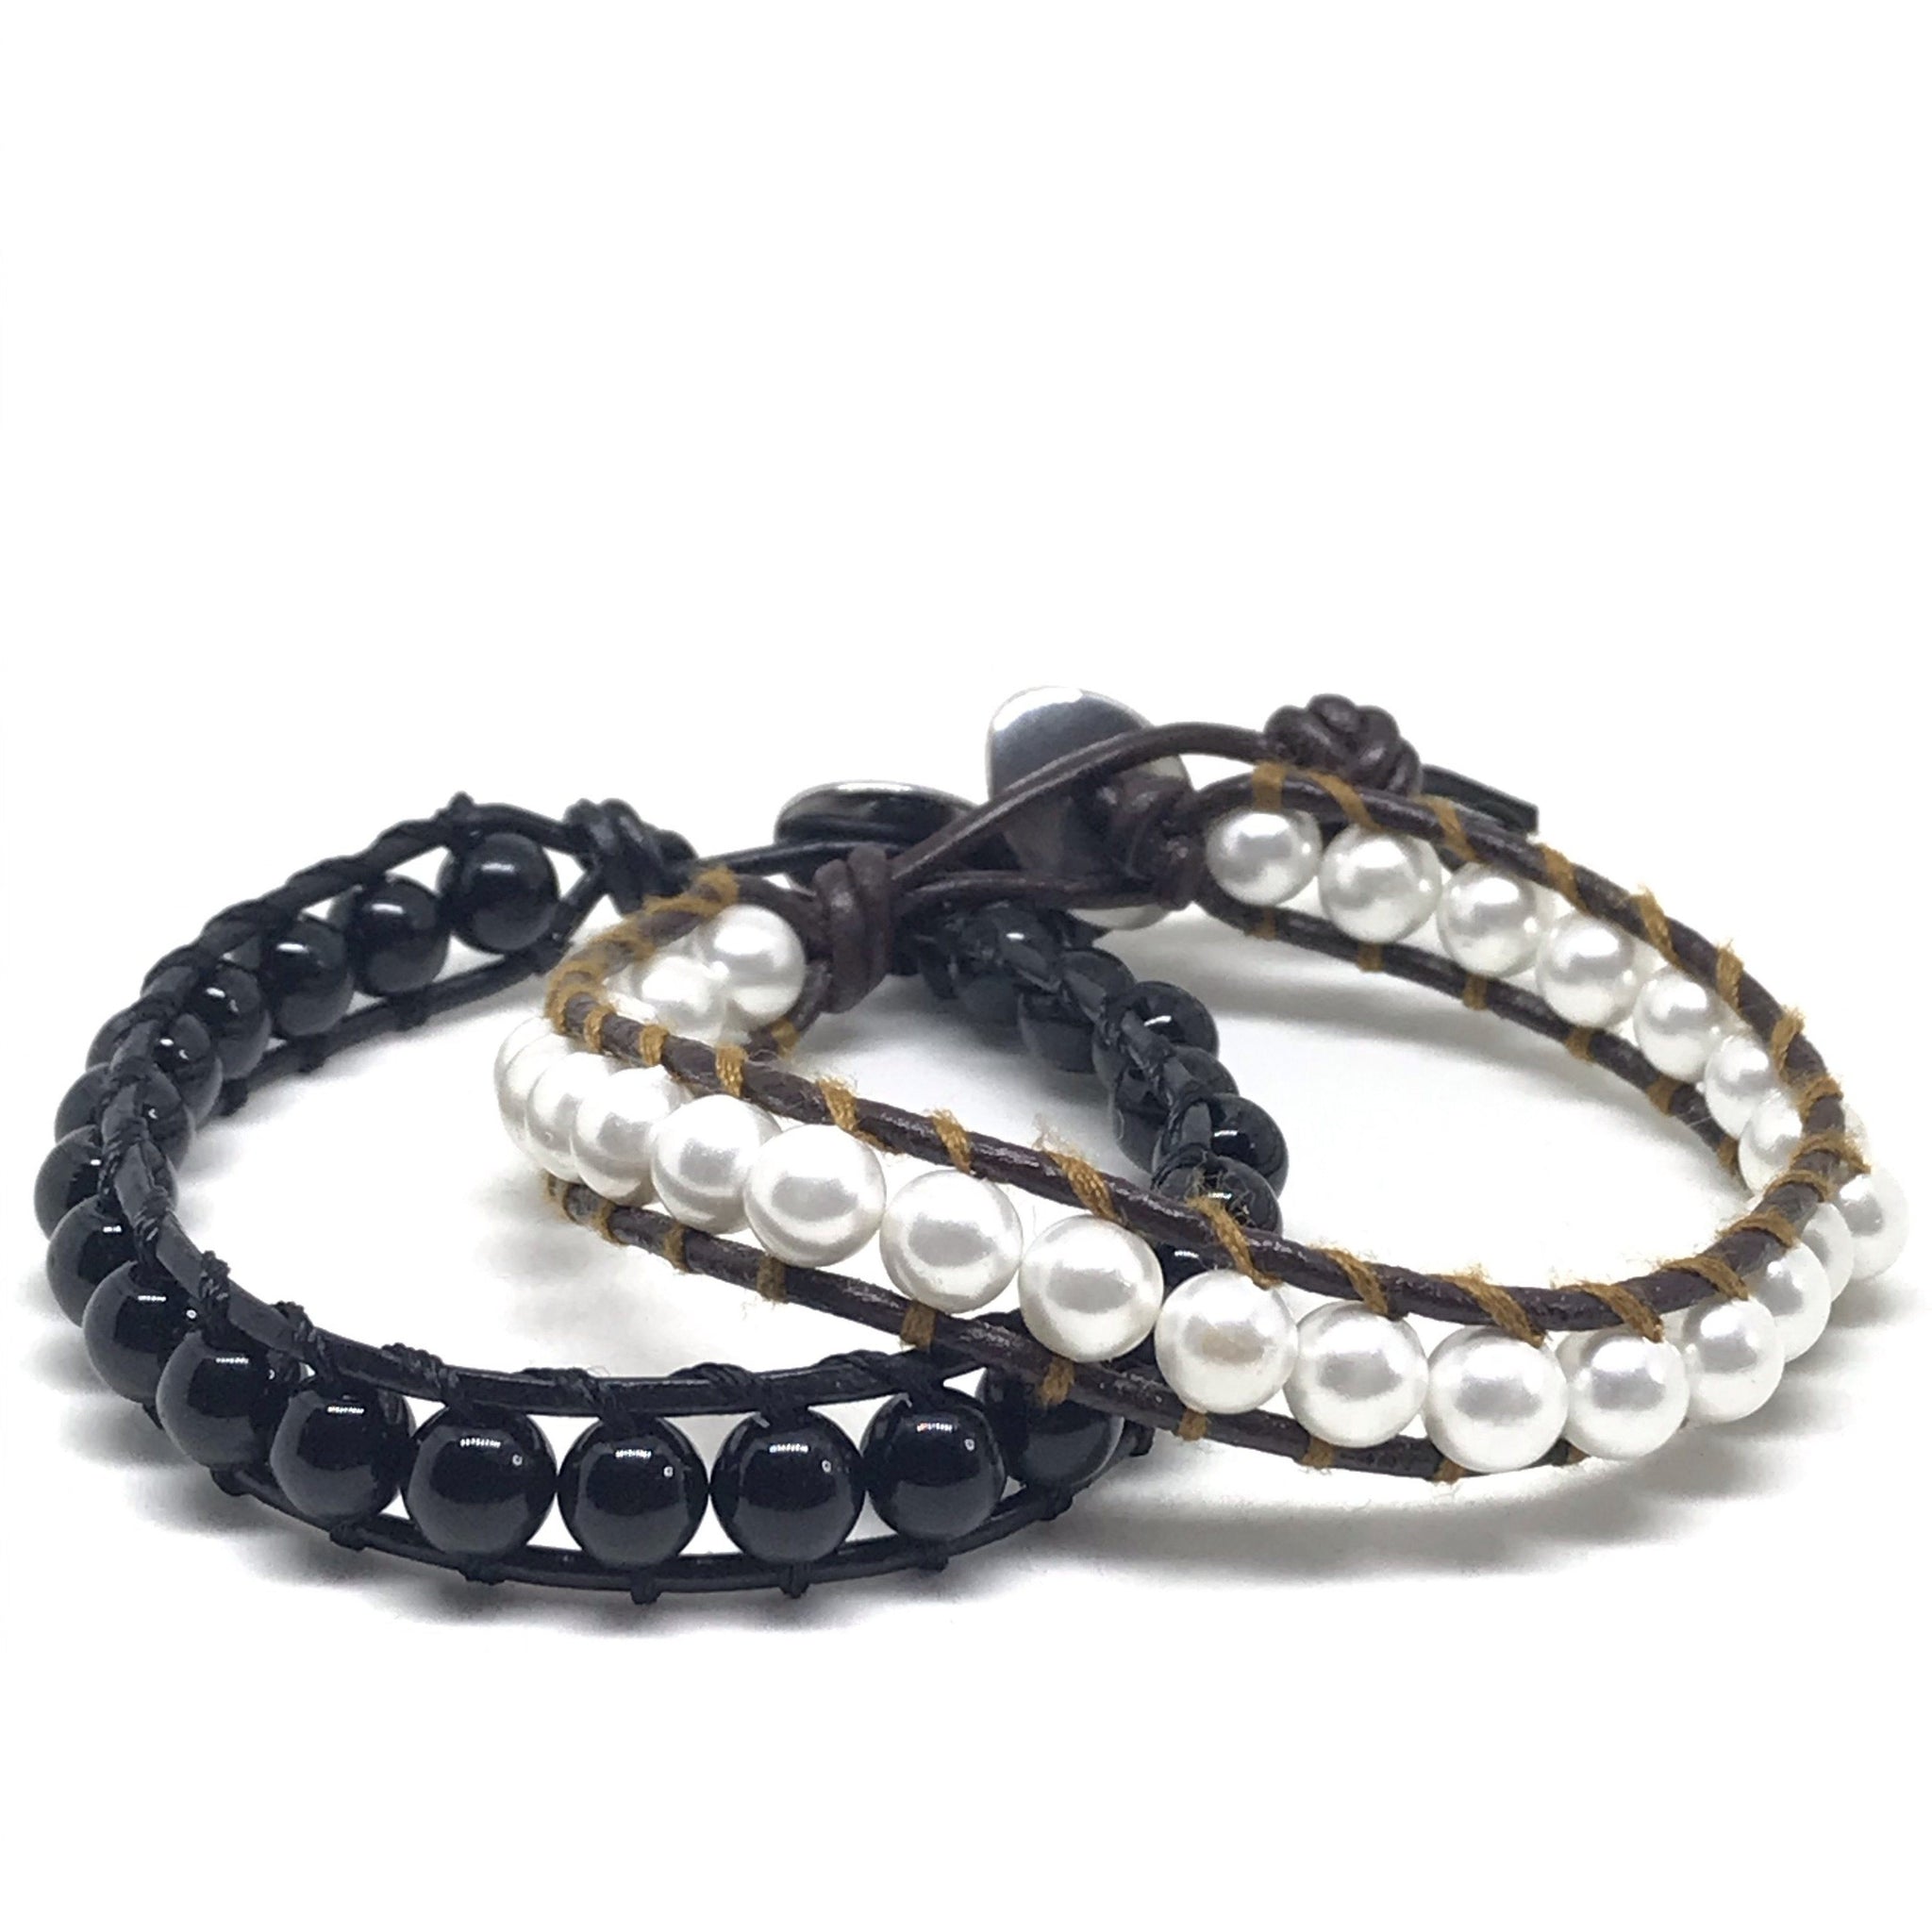 Yin and Yang Stack – Aqua Pura Bracelets